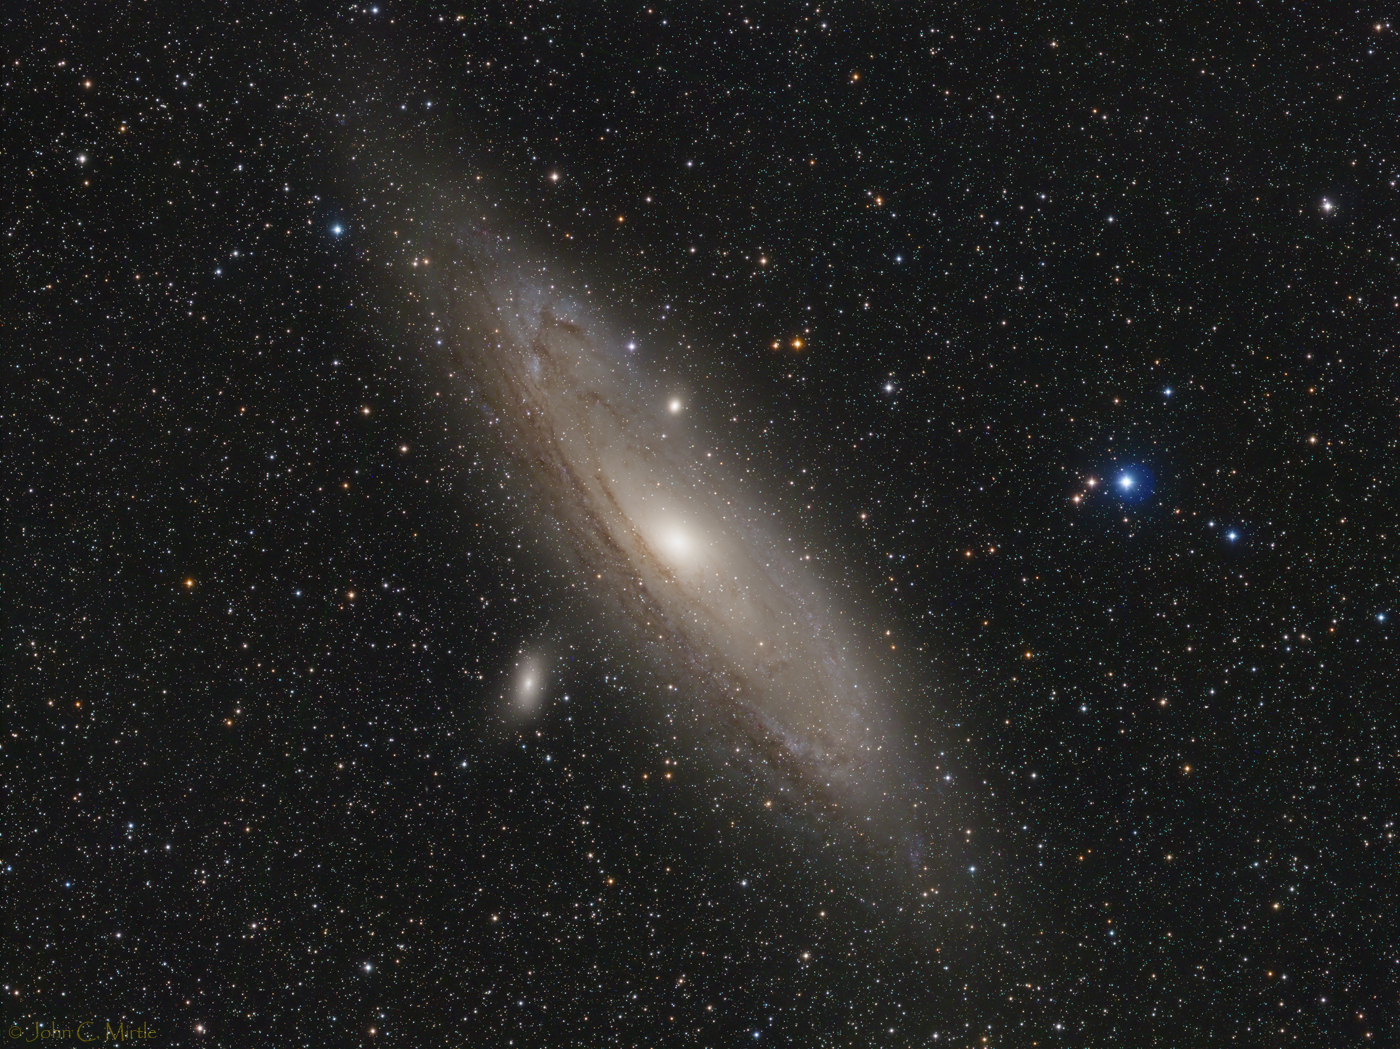 M31 - the Andromeda galaxy